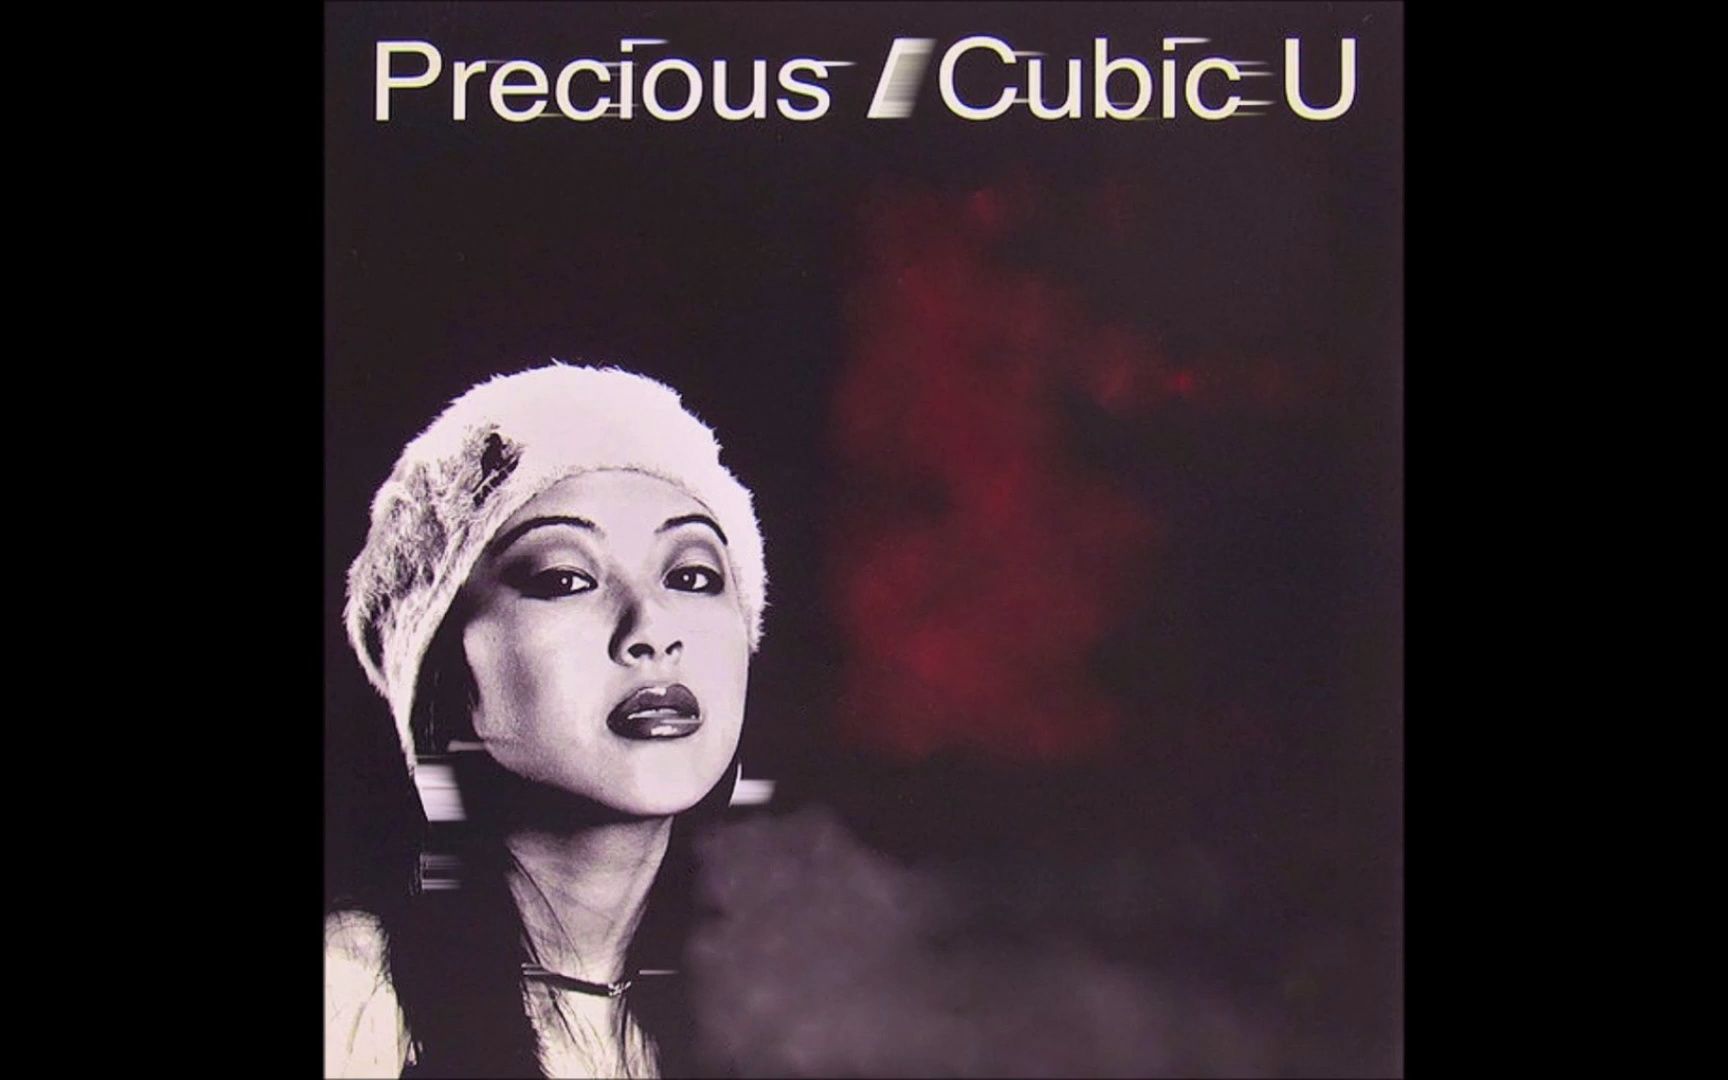 Cubic U 时期的宇多田光 - Precious【1998】全专辑版